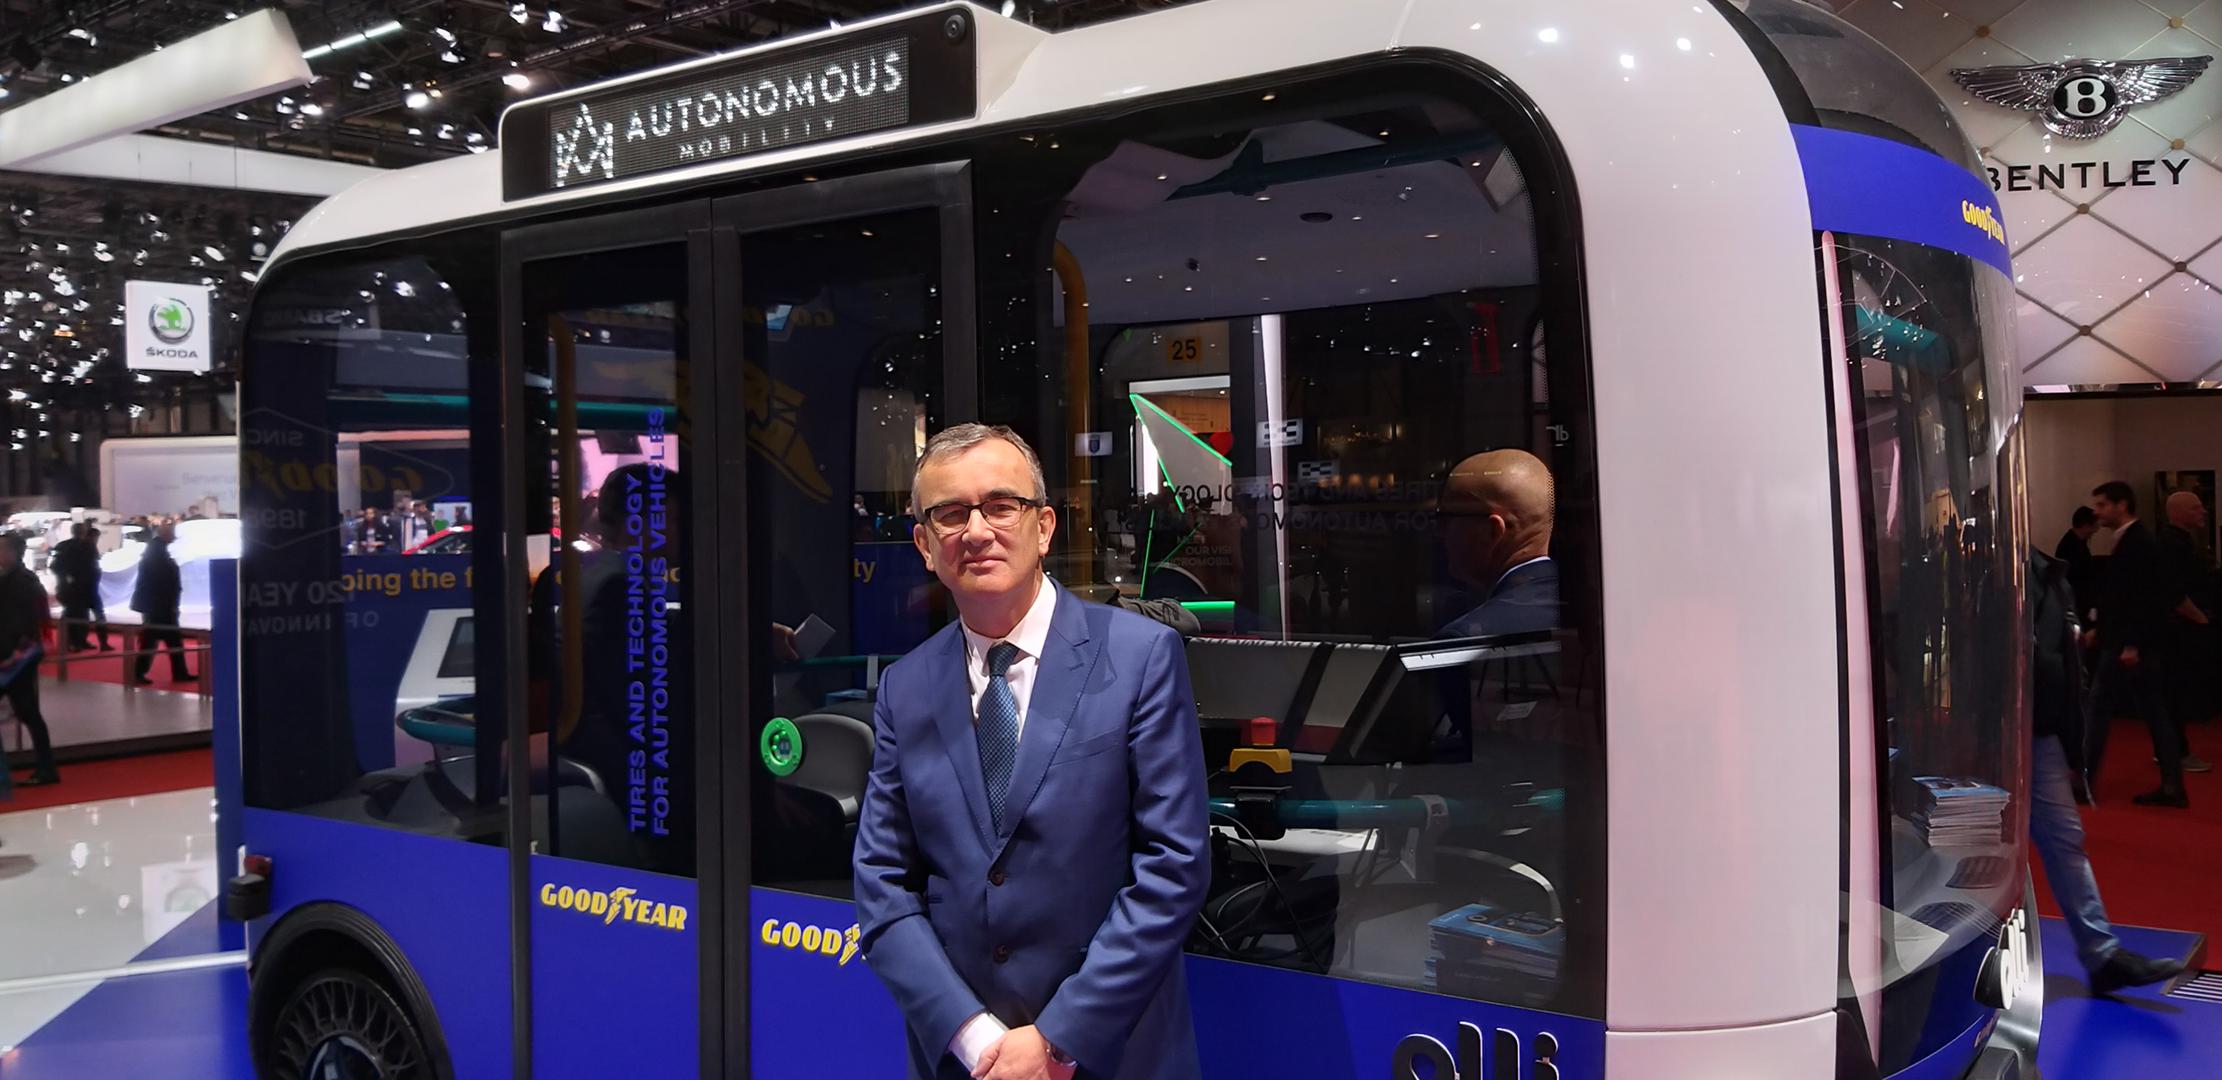 Goodyearove gume koriste se u razvoju autonomnog autobusa Olli, a Goodyearov europski potpredsjednik Henry Dumortier takva vozila na cesti očekuje u skoroj budućnosti